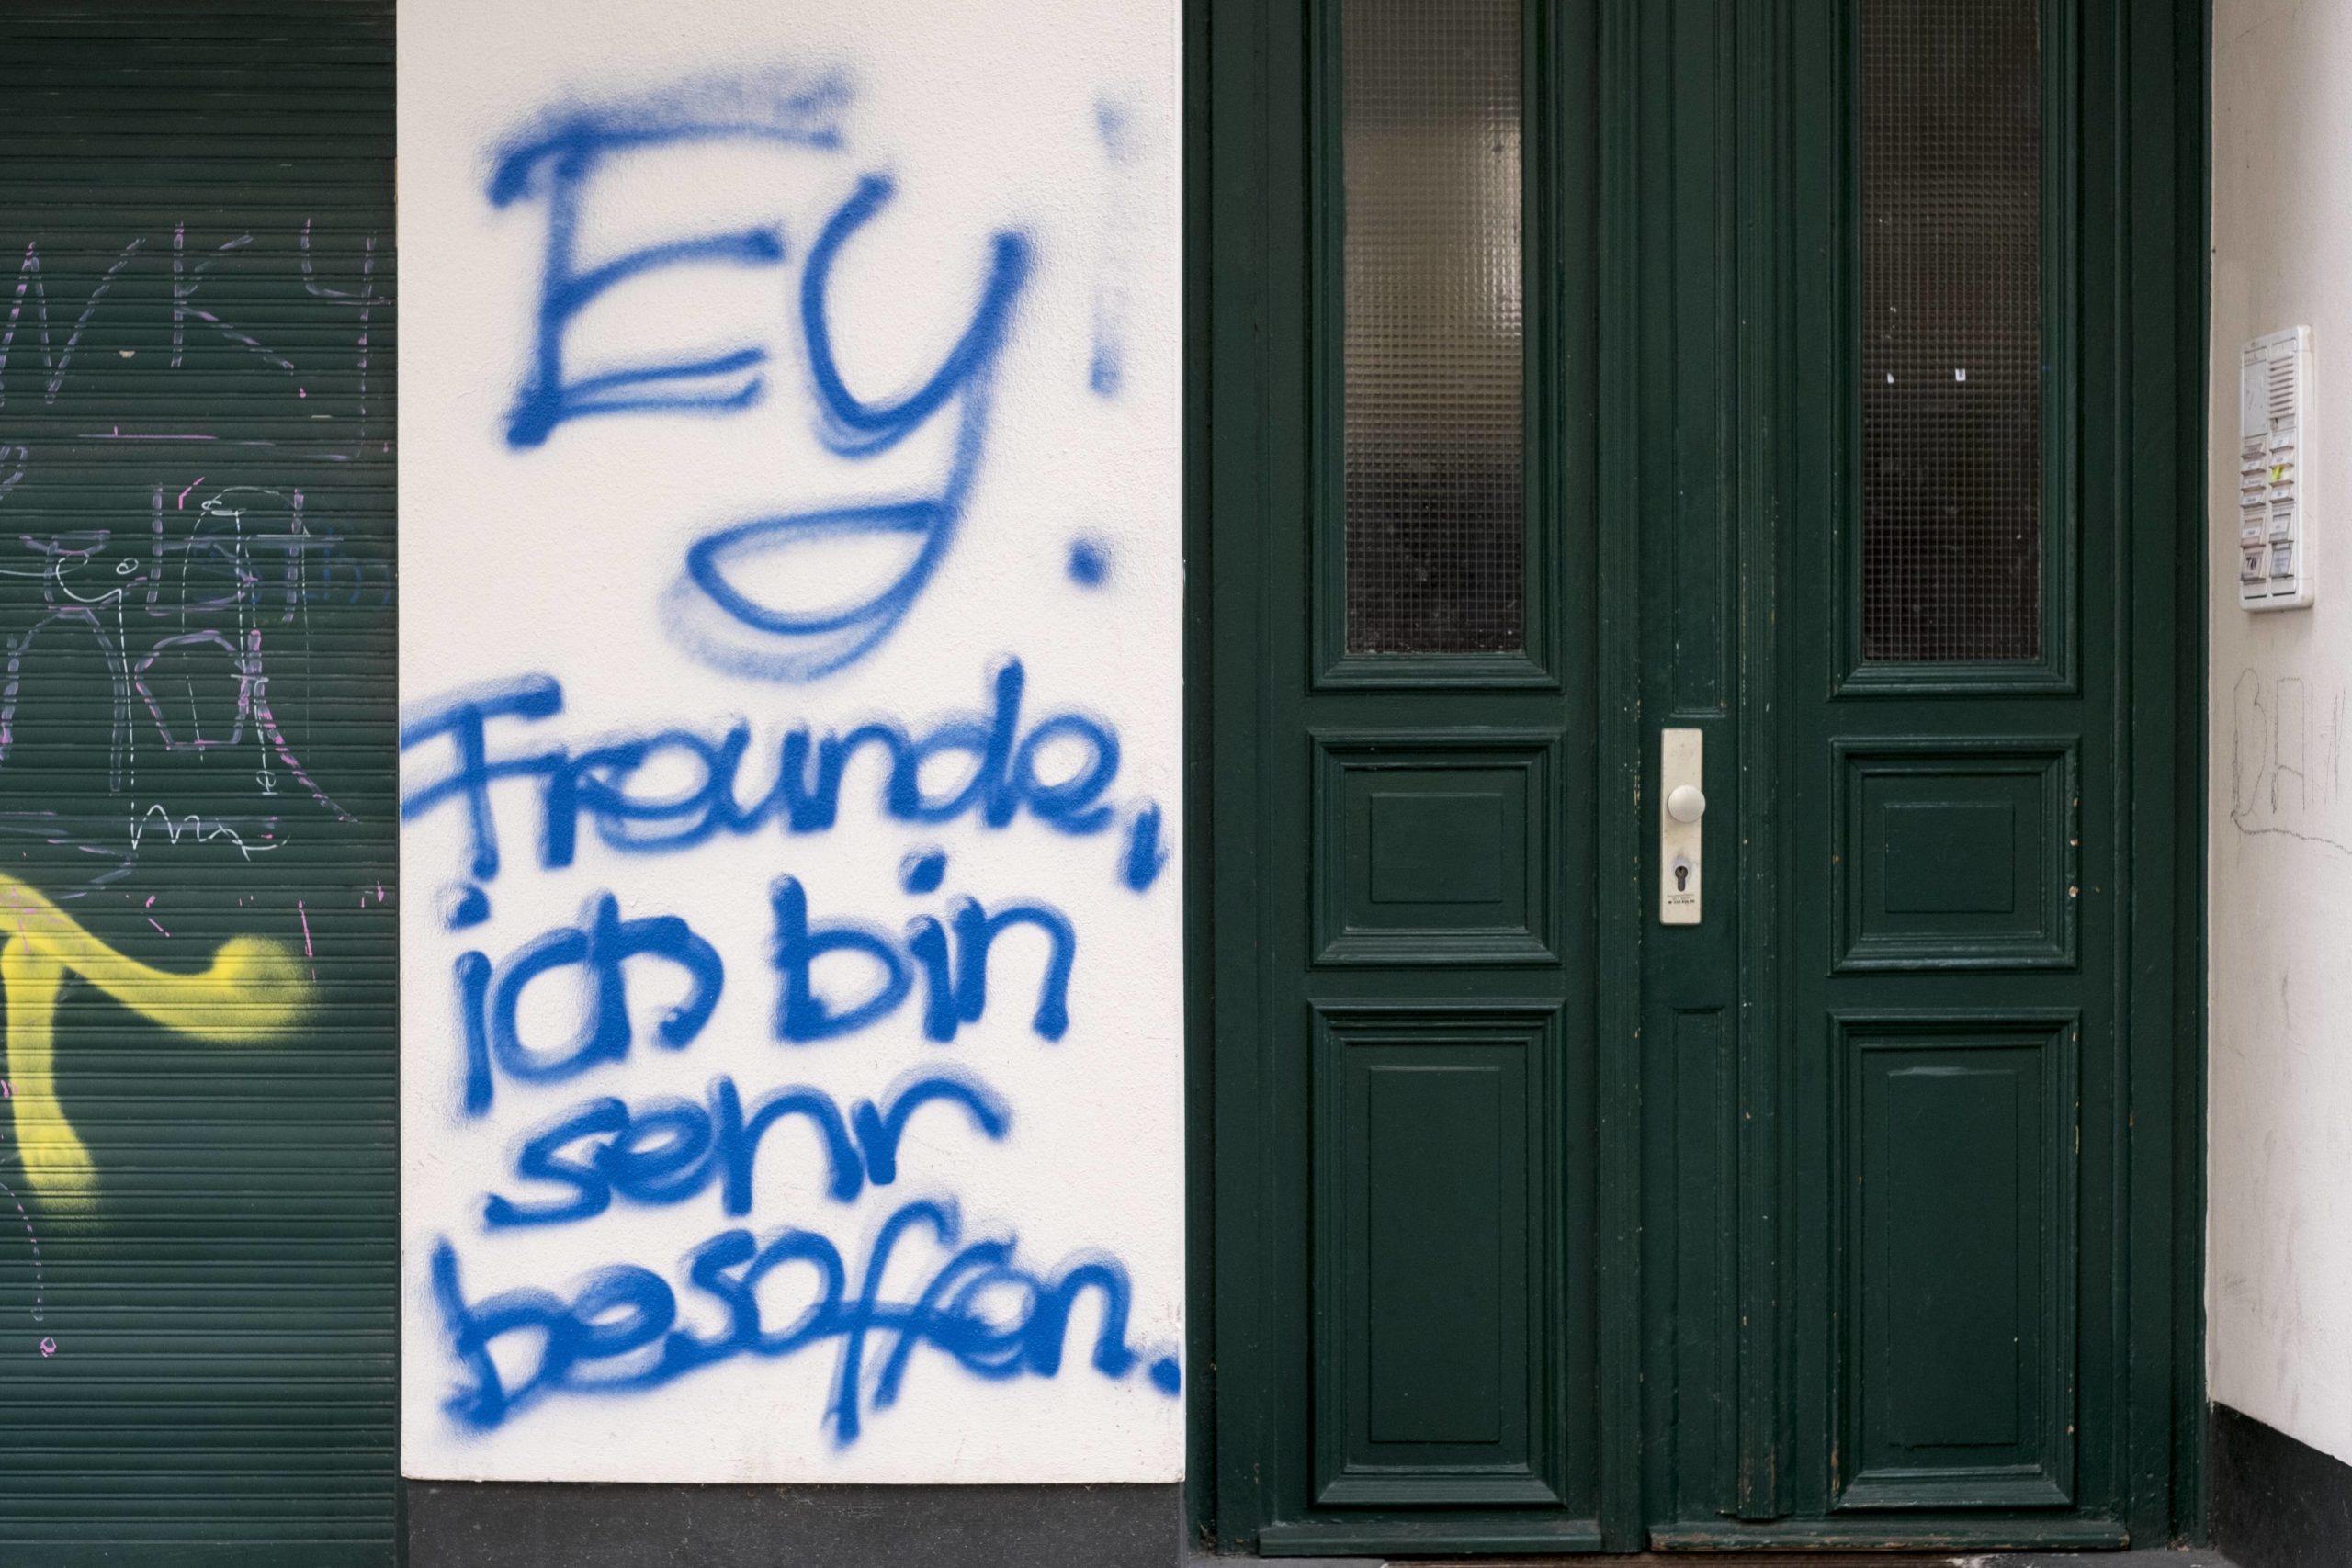 Ey: Freunde, ich bin sehr besoffen - Klare Aussage an einer Hauswand in der Dunckerstraße in Prenzlauer Berg. Foto: Imago/Seeliger